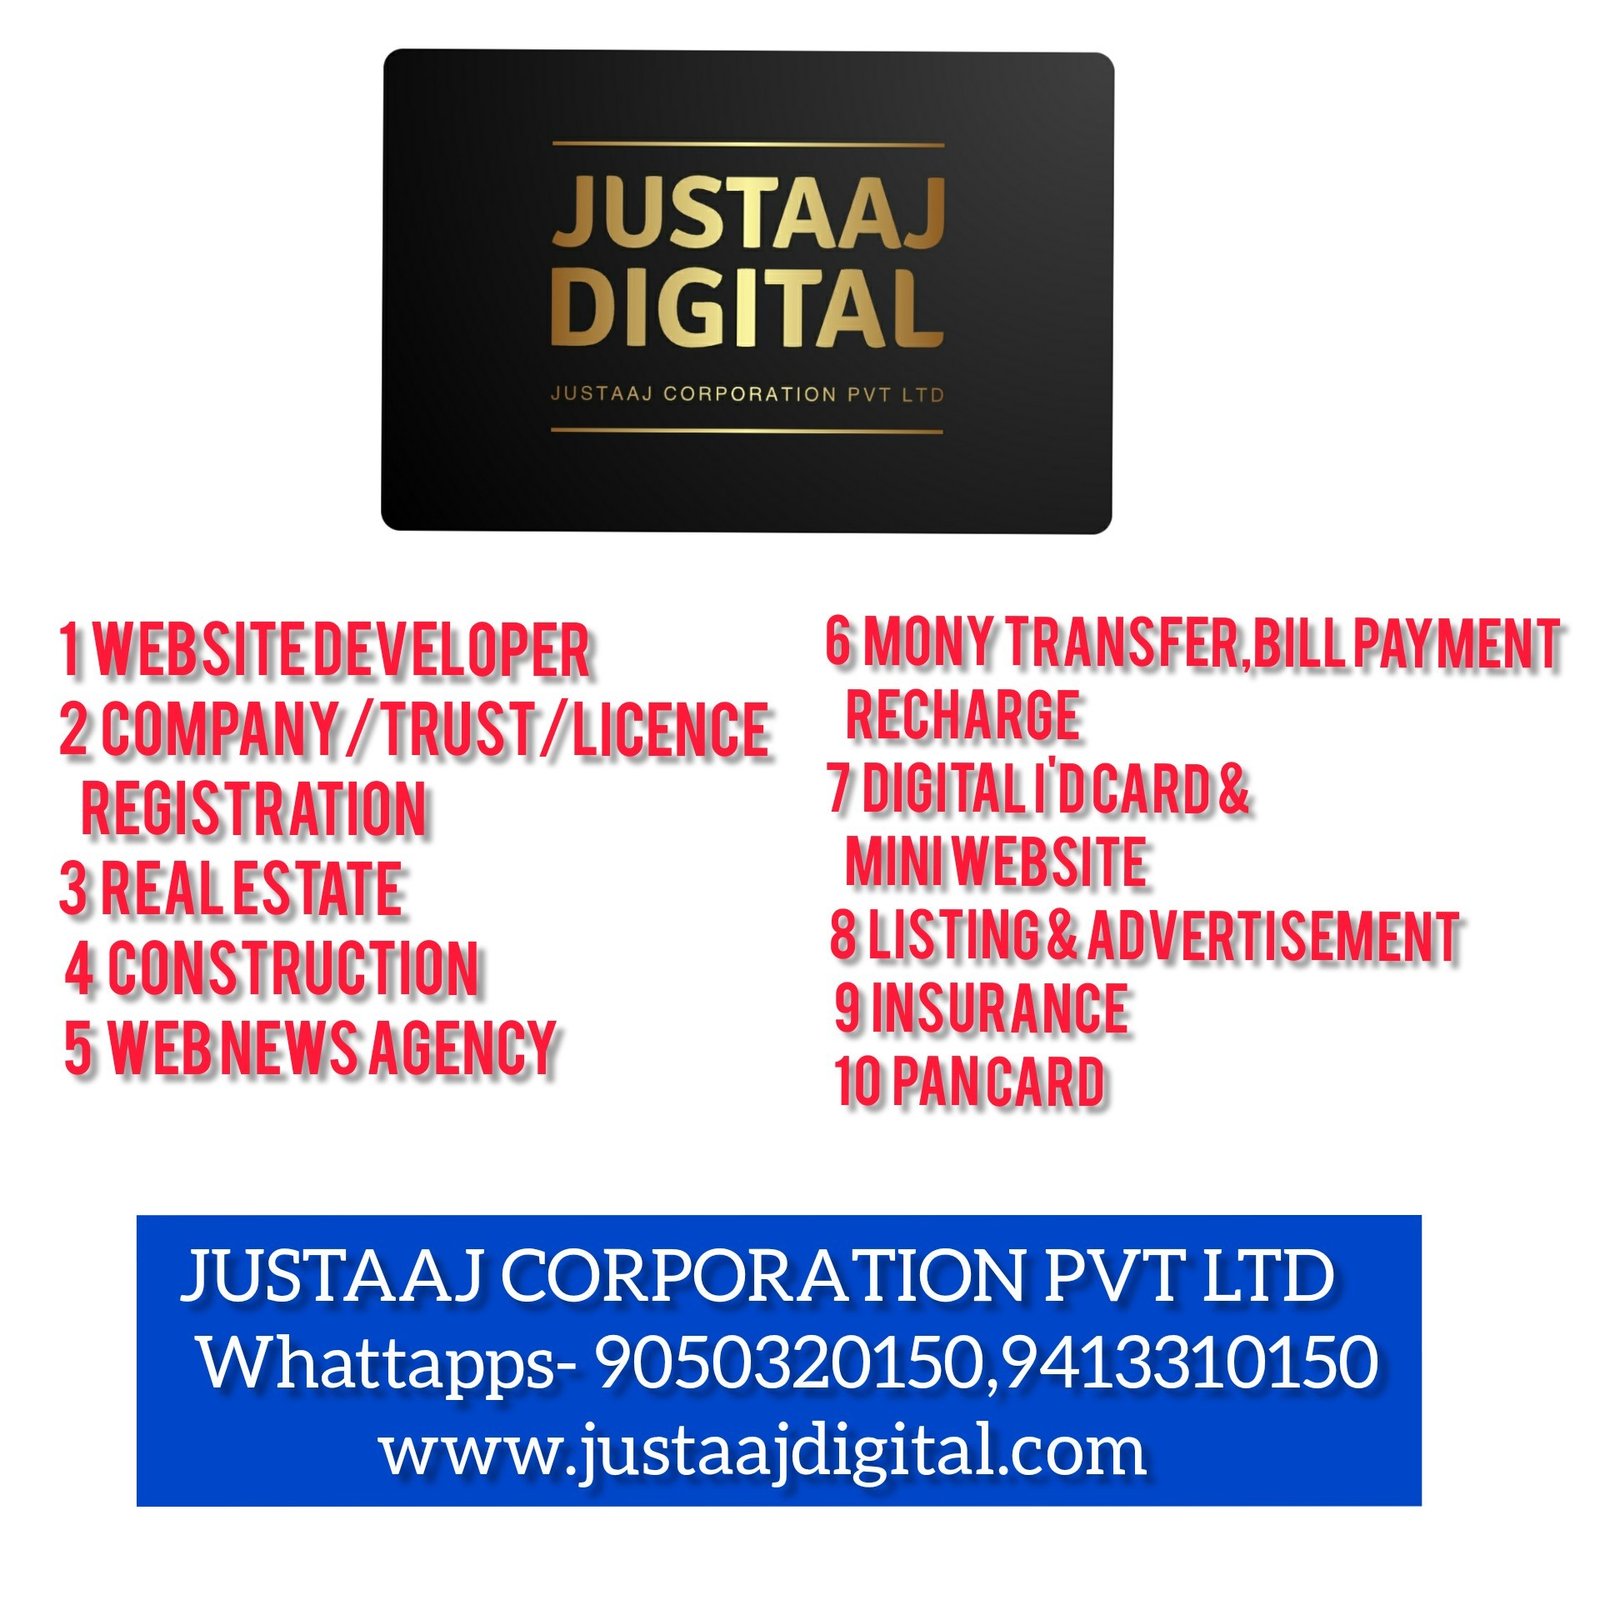 JUSTAAJ CORPORATION PVT LTD कम्पनी दे रही है आपको आपकी सिटी में सेंटर खोलने का मोखा 30+सर्विसेज के साथ